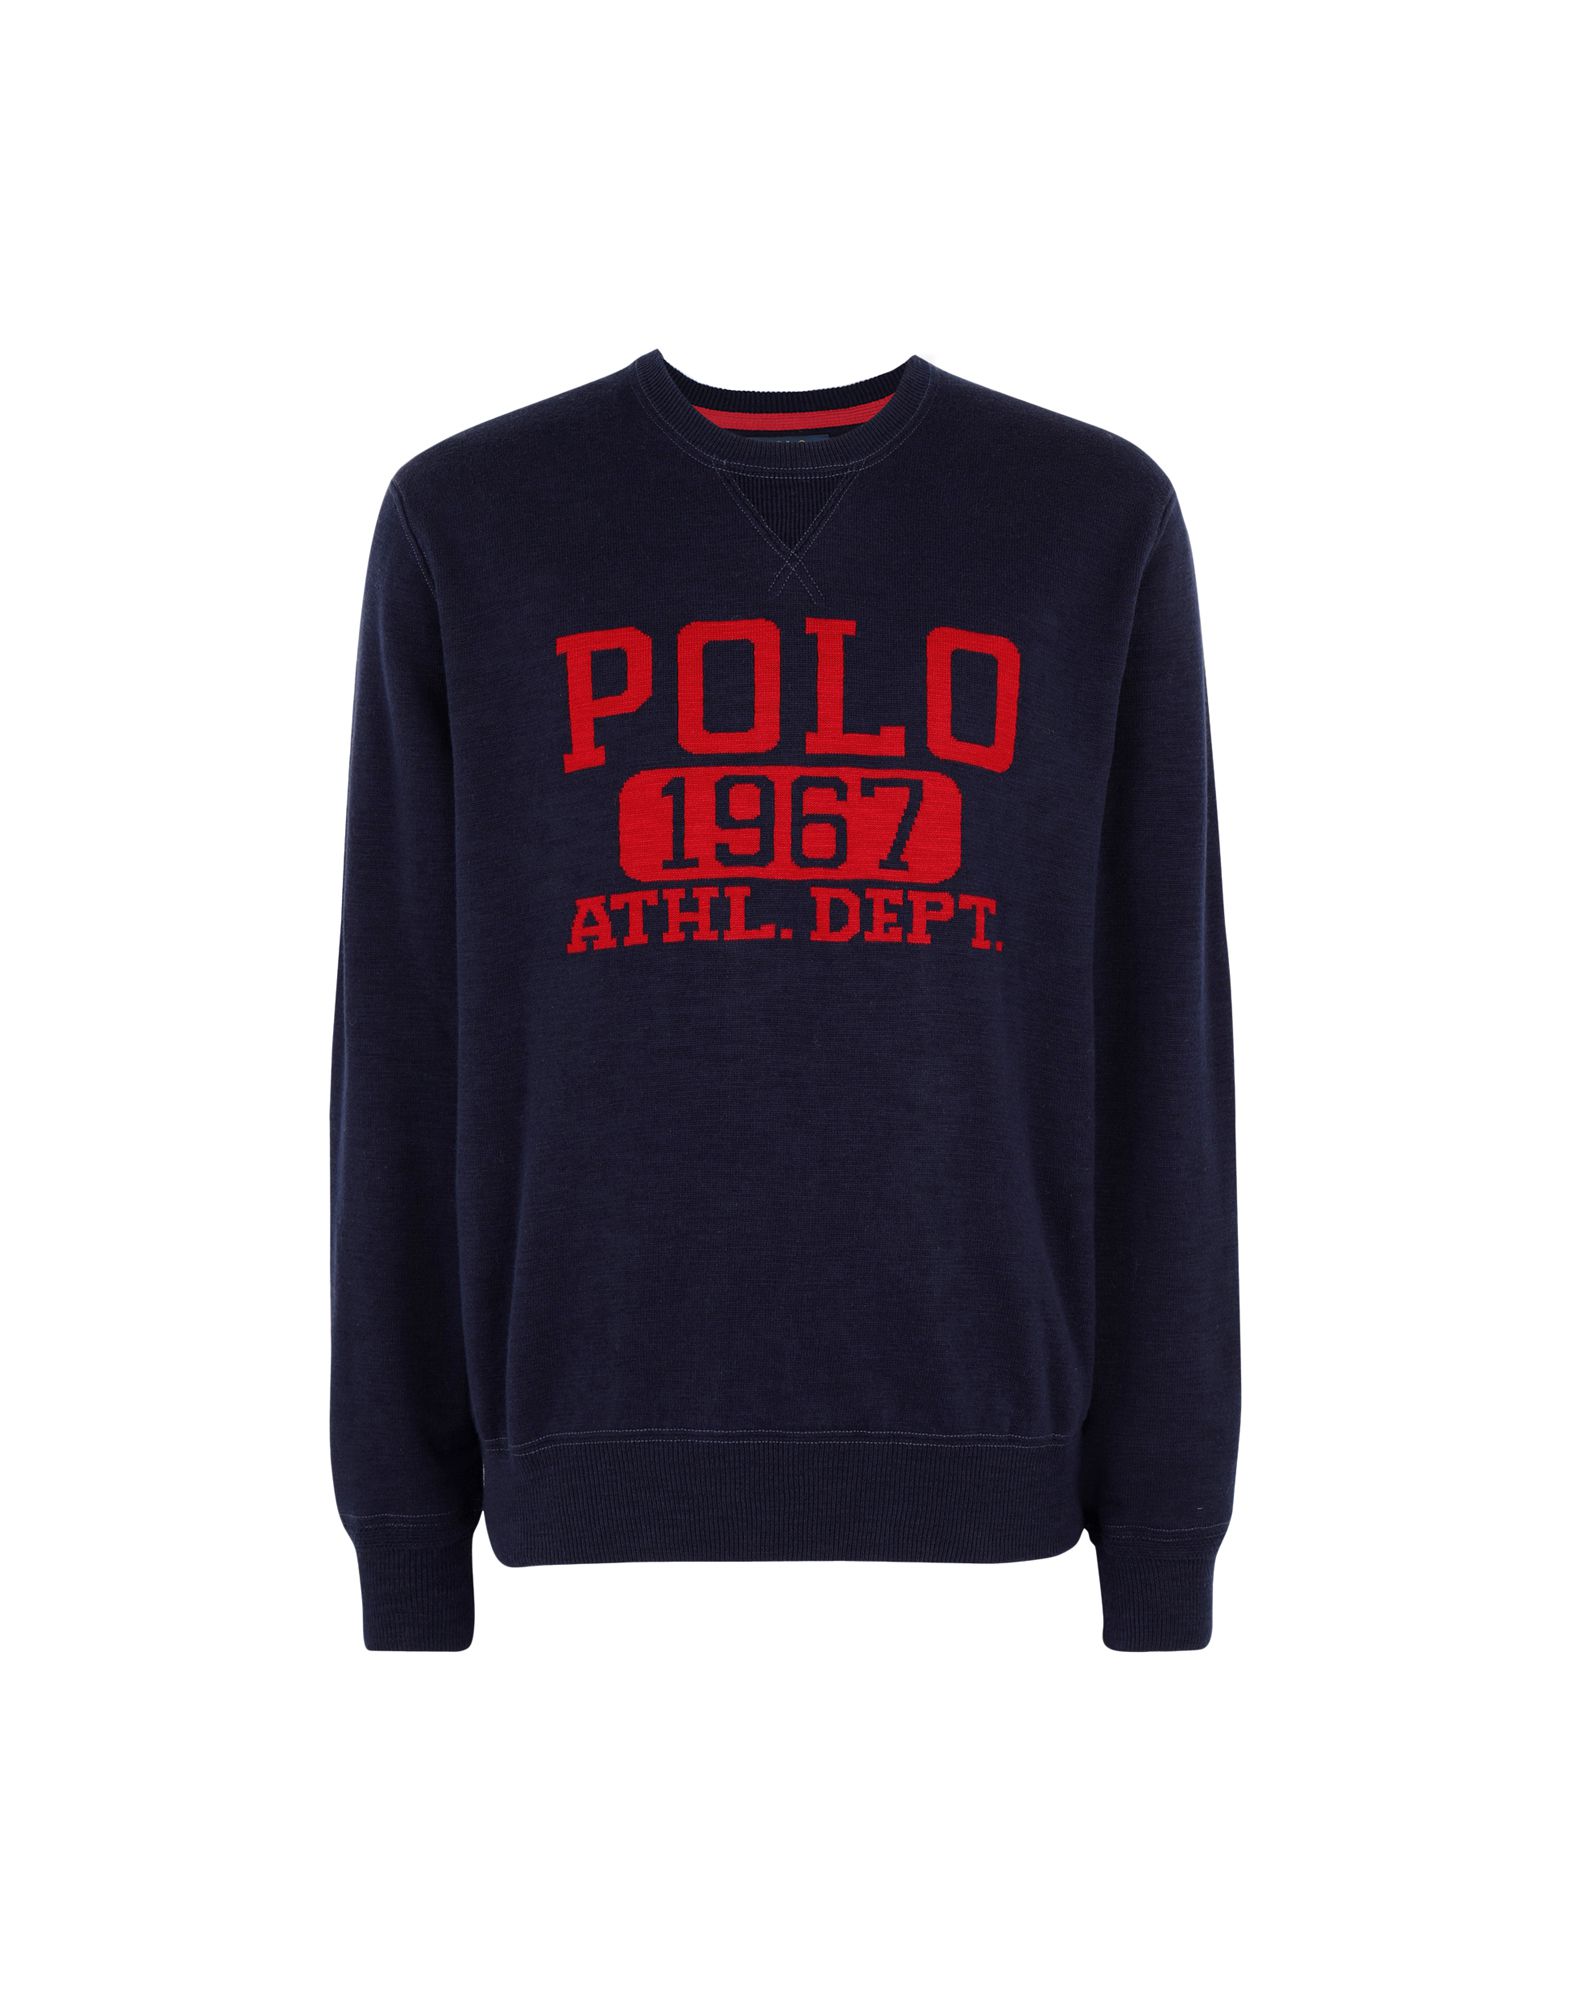 《送料無料》POLO RALPH LAUREN メンズ プルオーバー ダークブルー XS コットン 100% Cotton Graphic Sweater